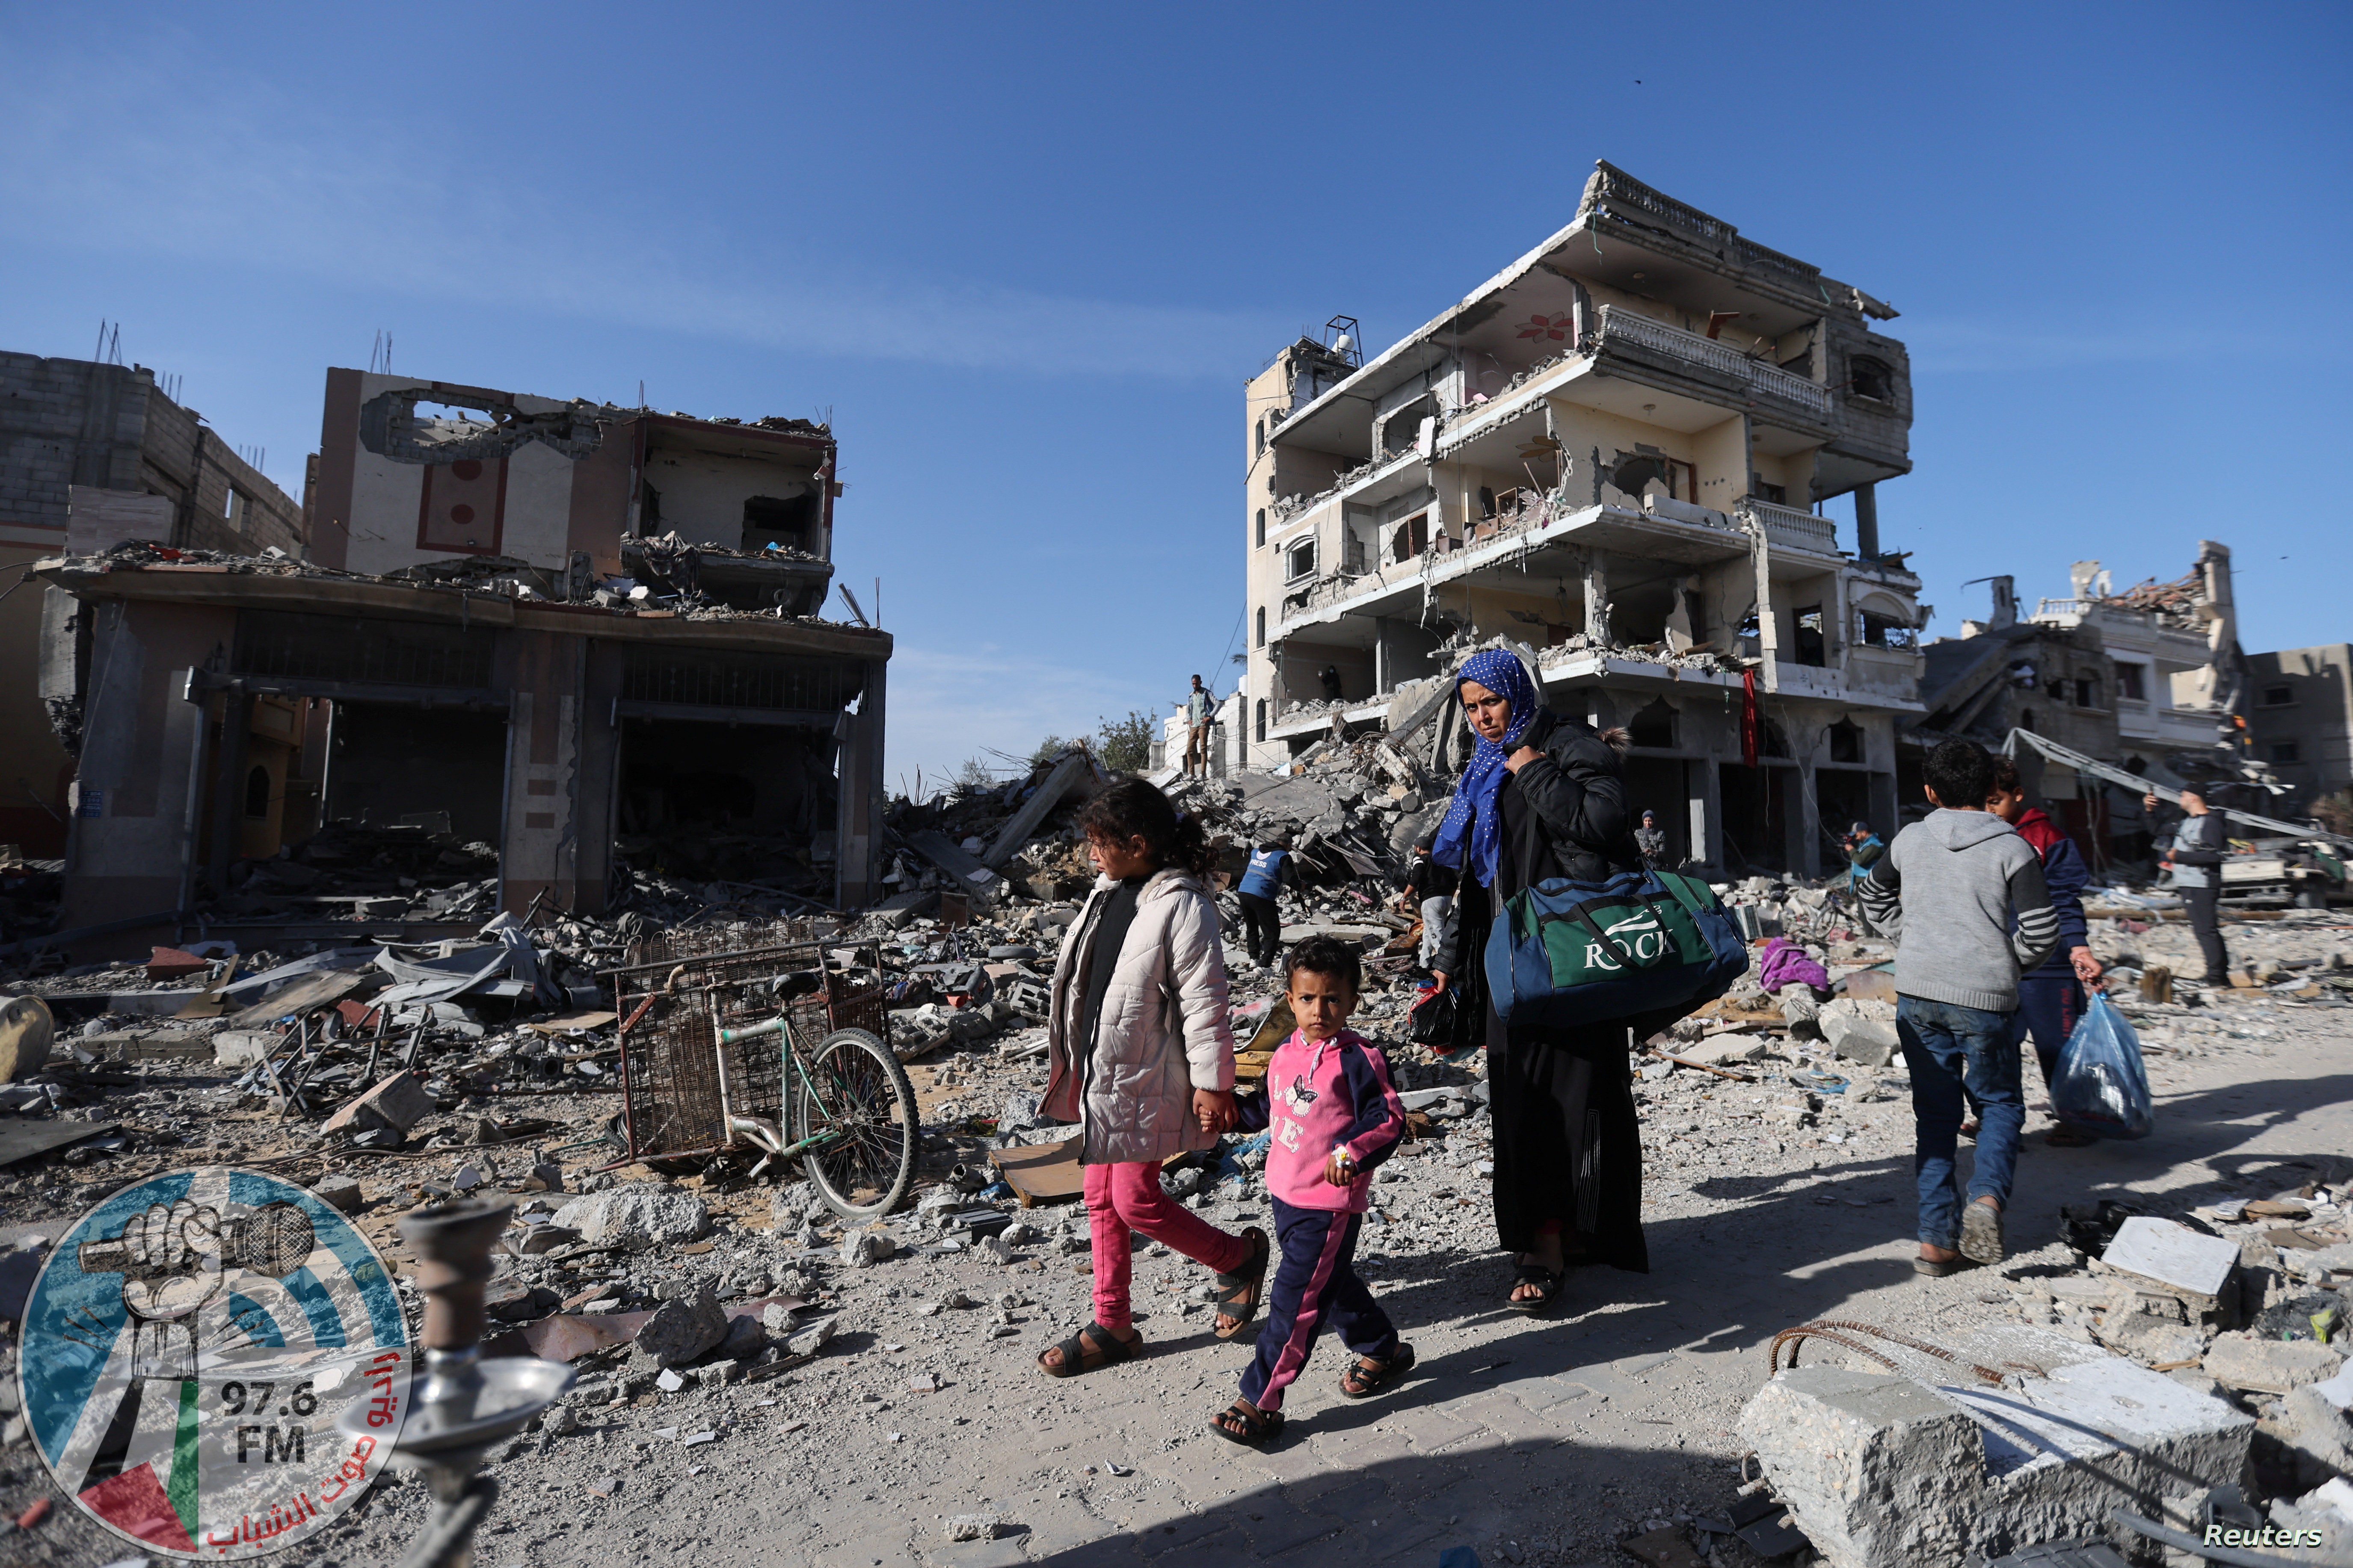 “الخارجية”: الفشل الدولي يُمكّن إسرائيل من تحويل قطاع غزة لمنطقة لا تصلح للحياة البشرية